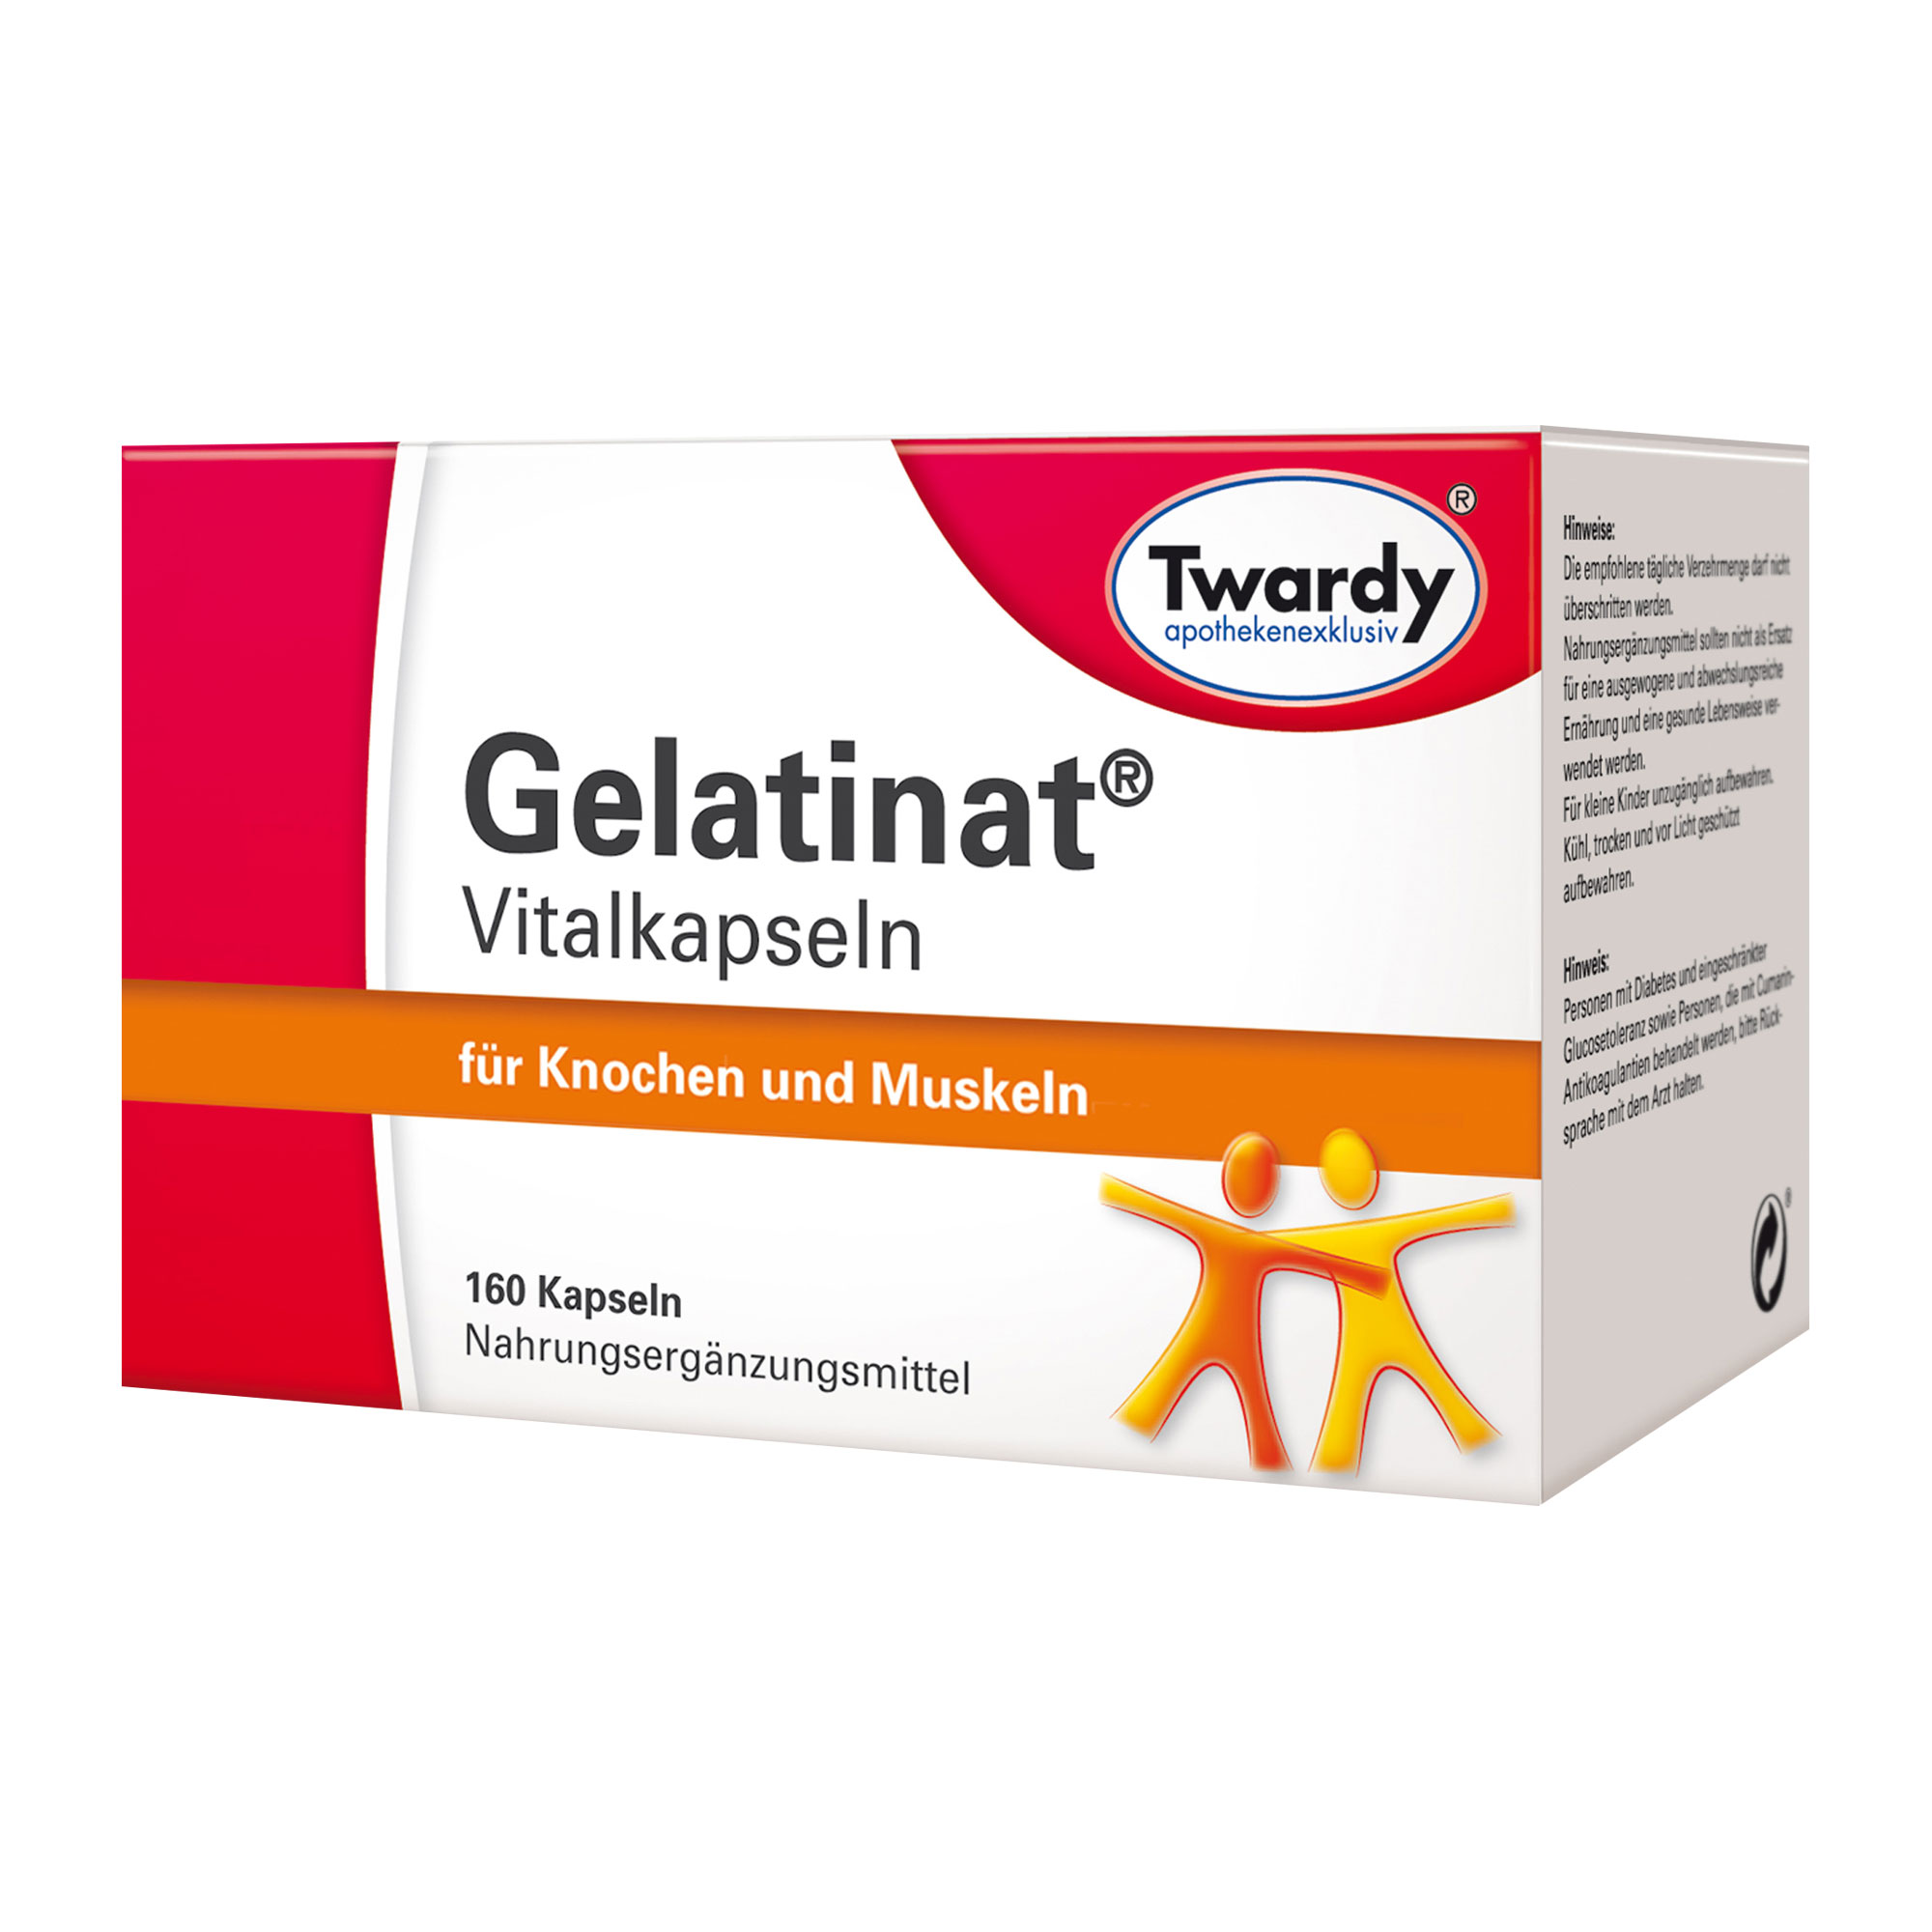 Nahrungsergänzungsmittel mit Gelatine-Hydrolysat, Calcium und Vitamin D3.